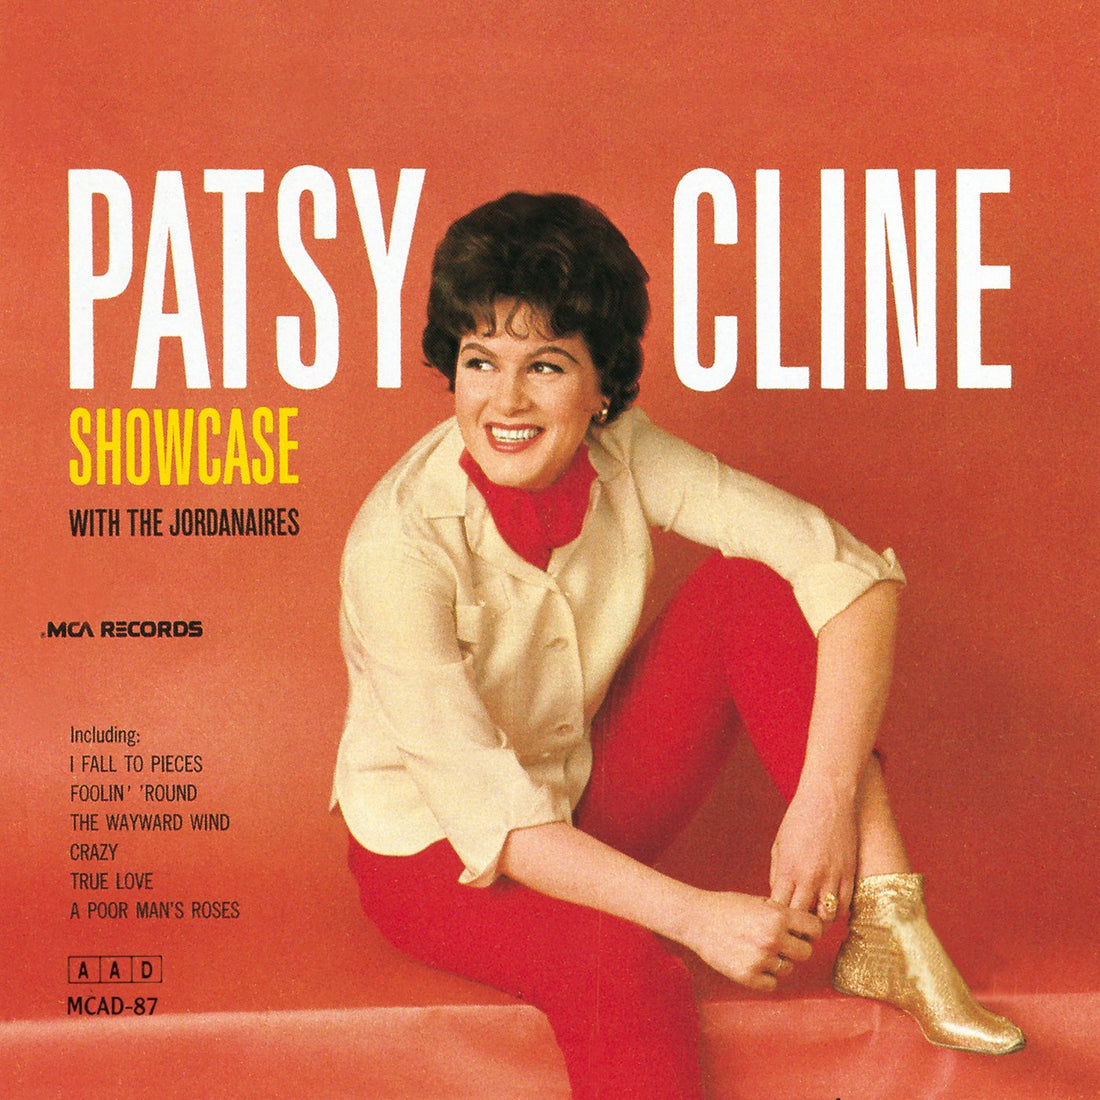 Patsy Cline- Showcase